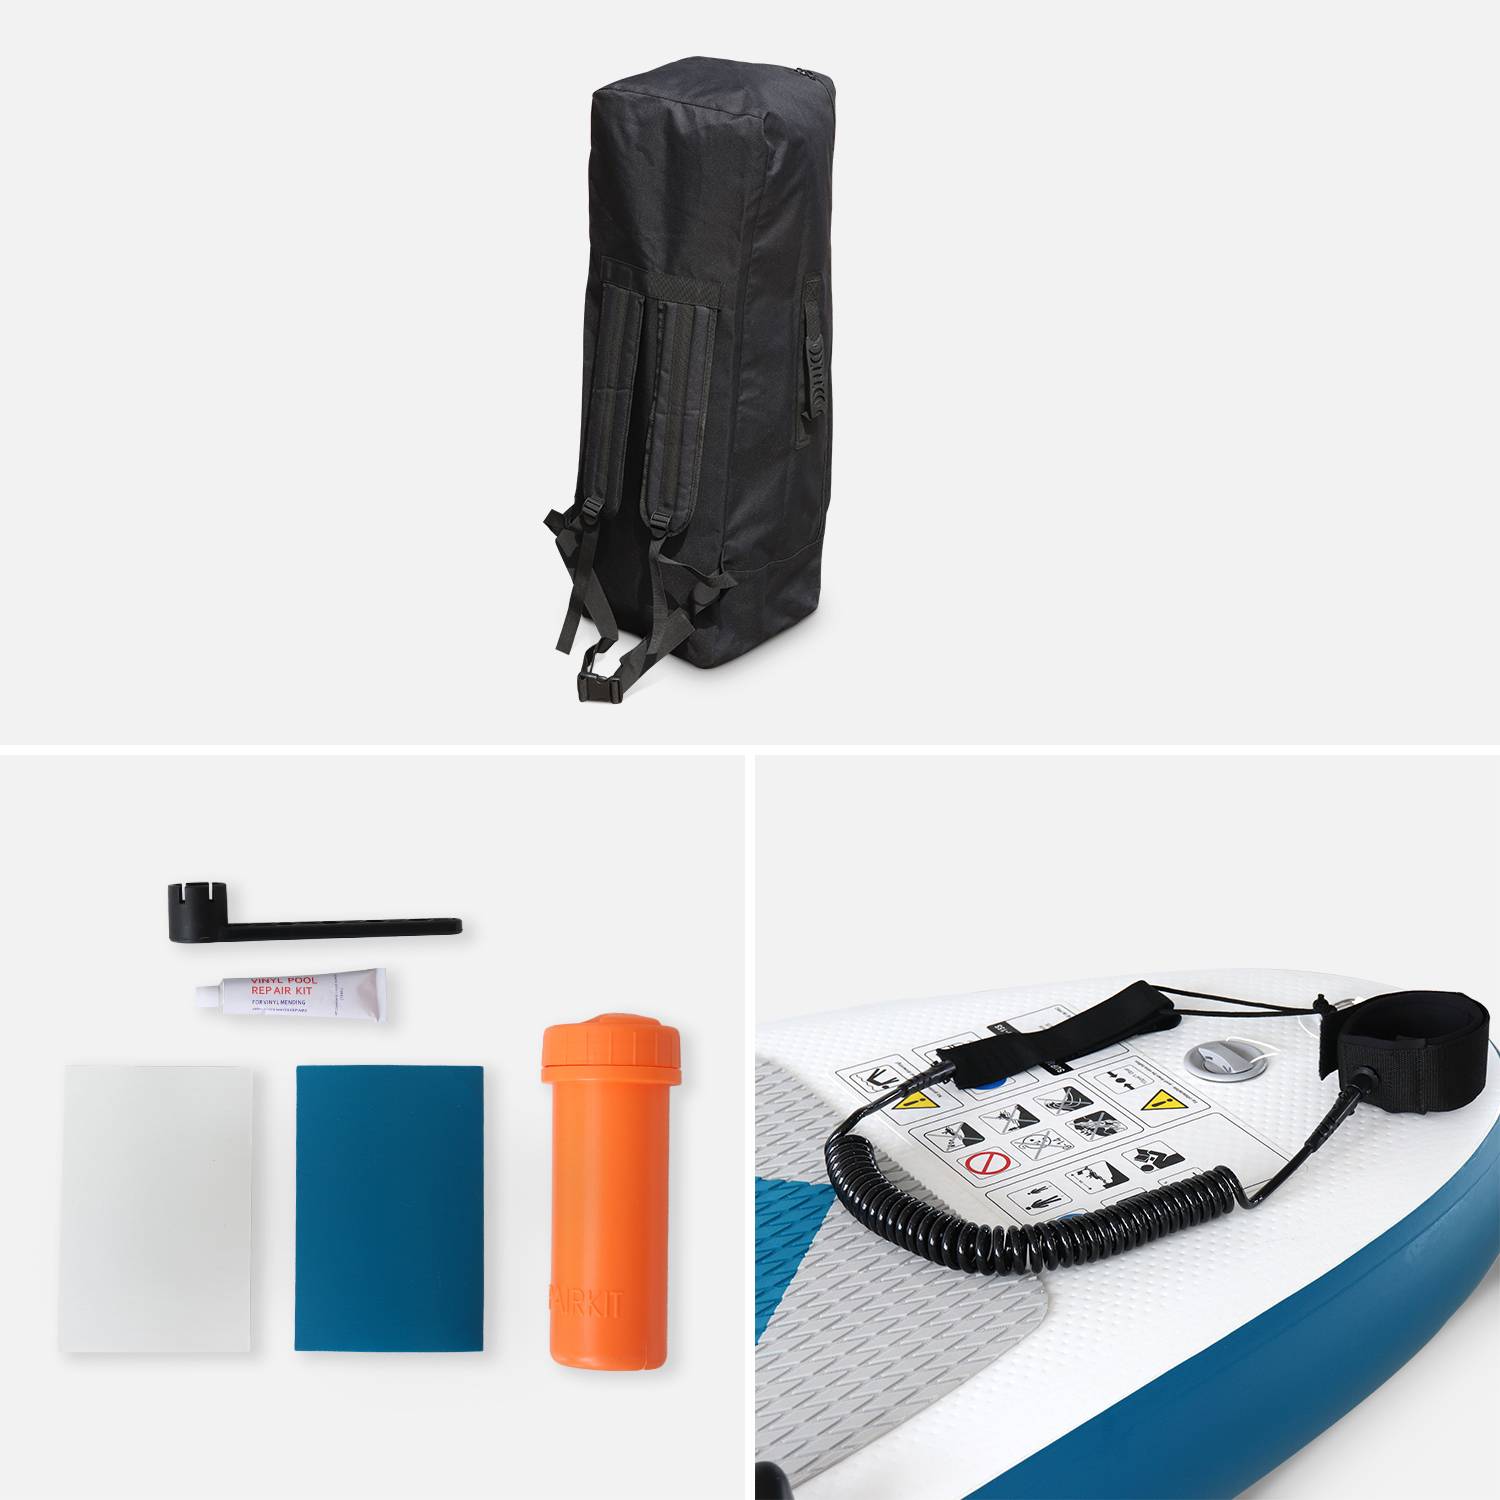 Pack de stand up paddle inflable Lio 11'10" con bomba de alta presión de doble acción, remo, correa y bolsa de almacenamiento incluidos Photo4